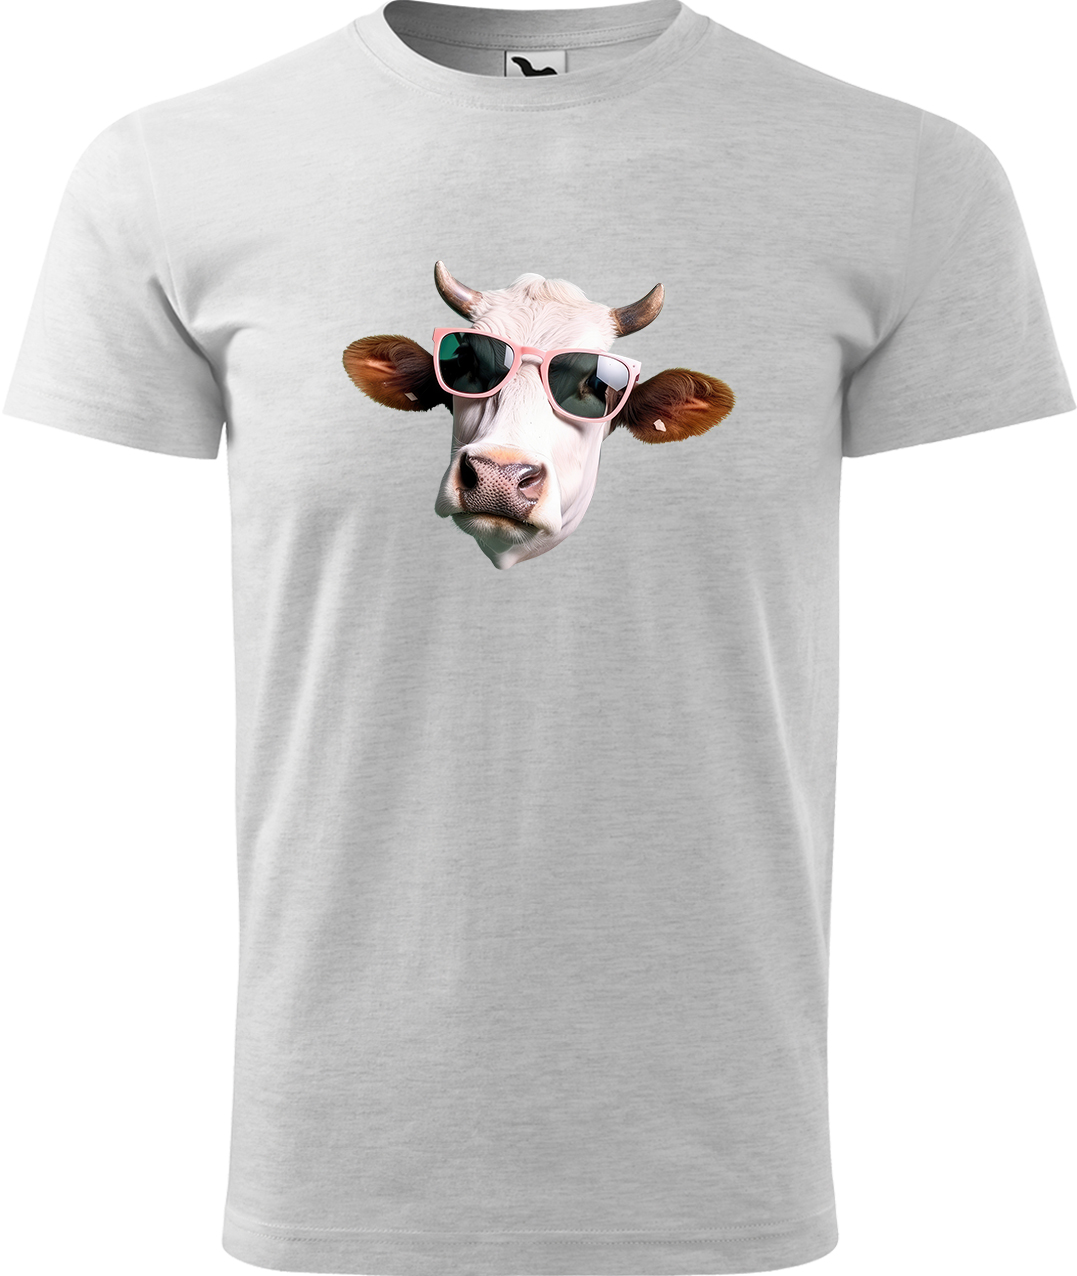 Pánské tričko s krávou - Kráva v brýlích Velikost: L, Barva: Světle šedý melír (03), Střih: pánský